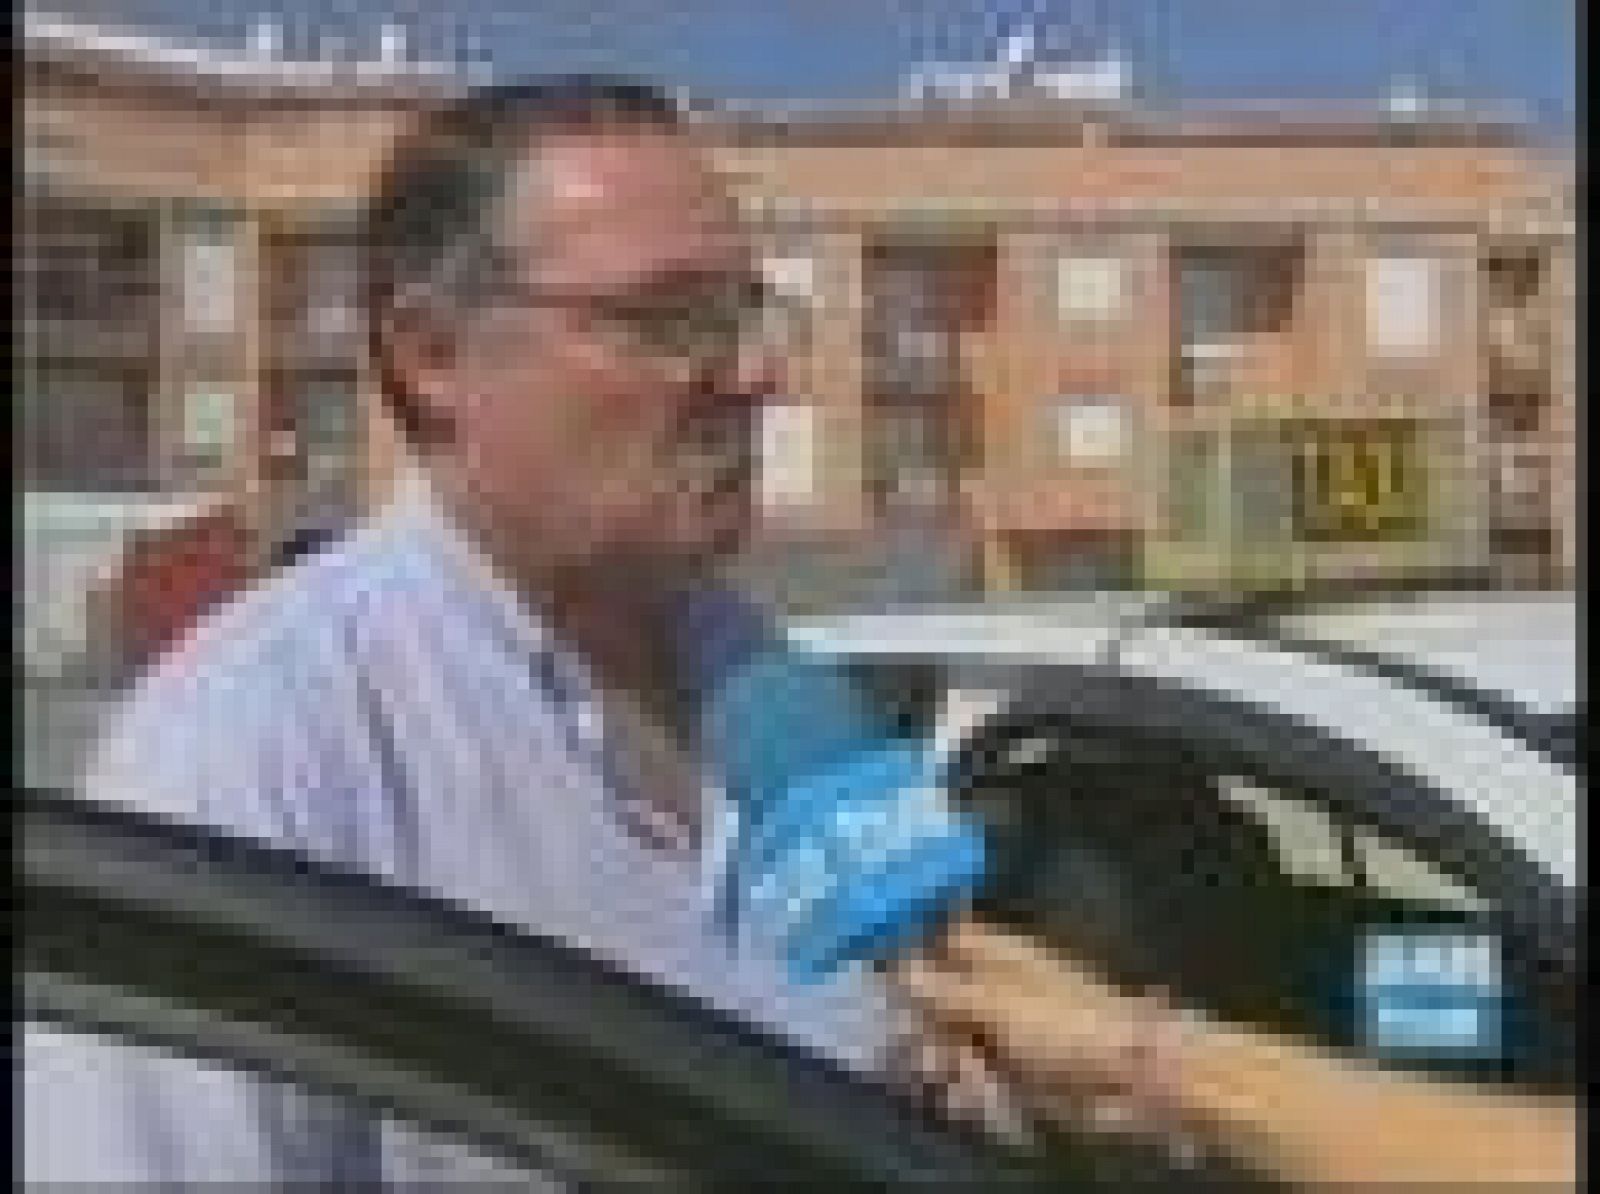 En Jaén los taxistas quieren que se aumente la seguridad y que se reduzcan los tiempos de atención en caso de agresiones tras los dos incidentes que han ocurrido en los últimos quince días.